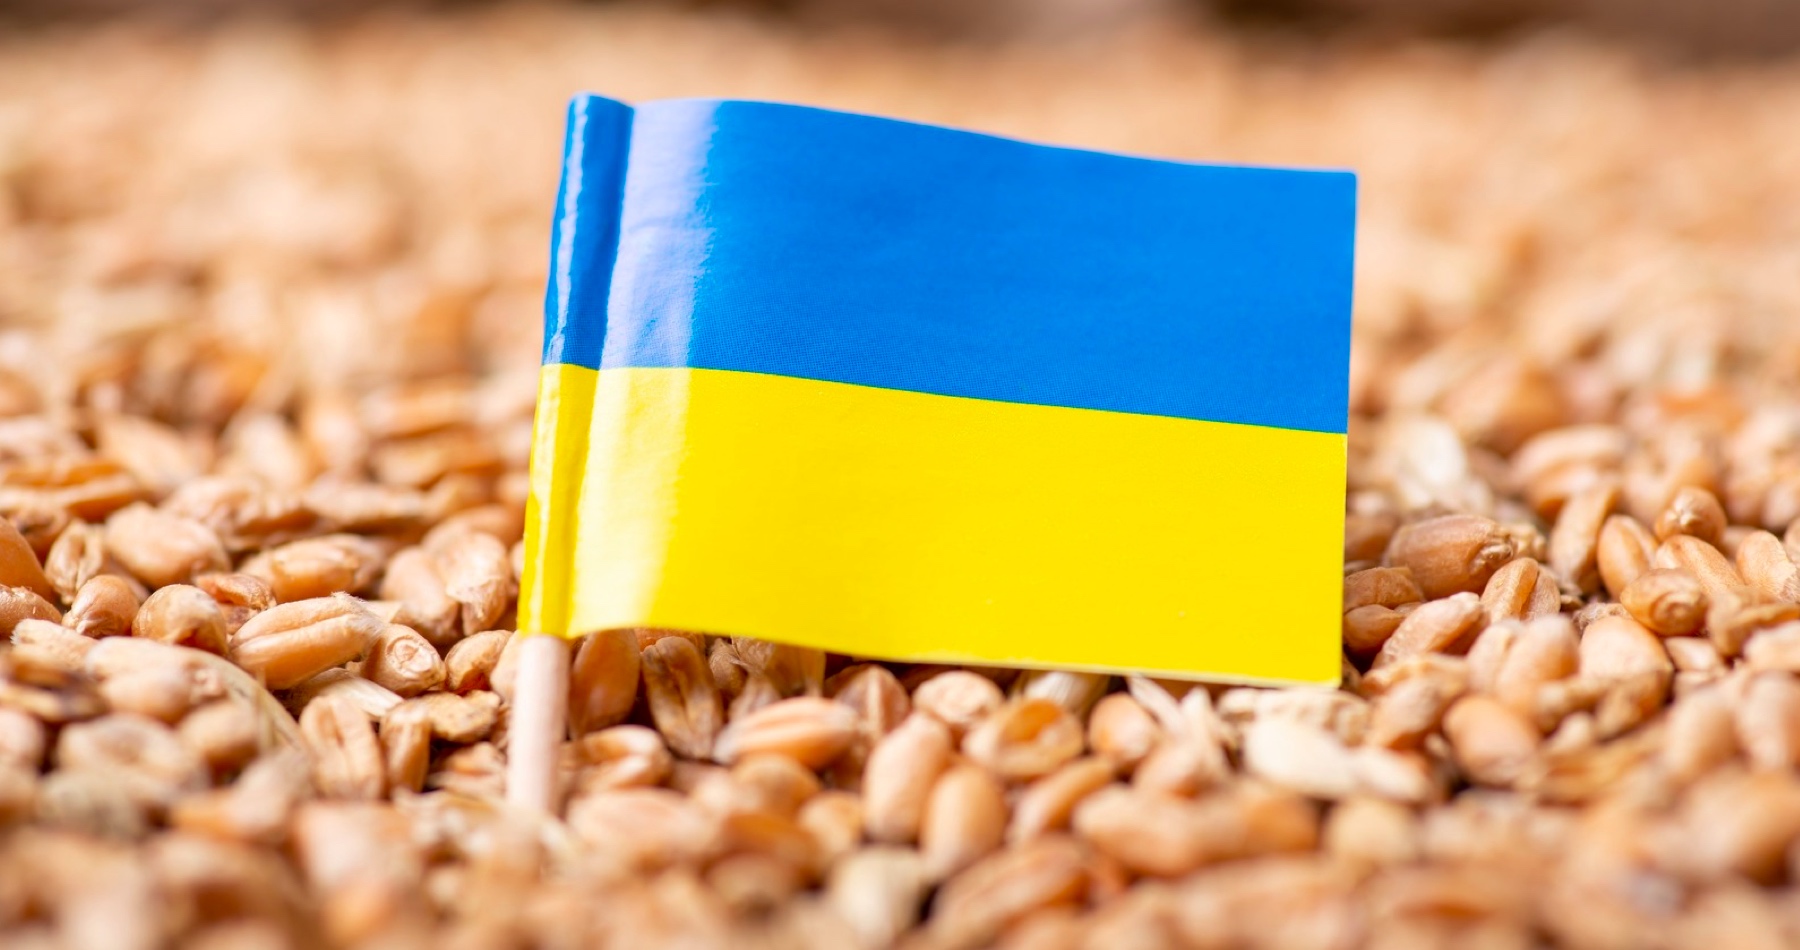 VIDEO: Nevďačná Ukrajina žaluje Maďarsko, Poľsko a Slovensko za to, že zakazujú dovoz jej agroproduktov. Varšava oznámila, že aj naďalej bude uplatňovať zákaz dovozu ukrajinského obilia. Orbánova vláda považuje rozhodnutie Bruselu nepredĺžiť zákaz dovozu ukrajinských poľnohospodárskych produktov za nehoráznosť. Slovenské ministerstvo poľnohospodárstva oznámilo, že embargo nezruší. „Musíme chrániť aj záujmy našich poľnohospodárov,“ reaguje šéf Slovenskej poľnohospodárskej a potravinárskej komory